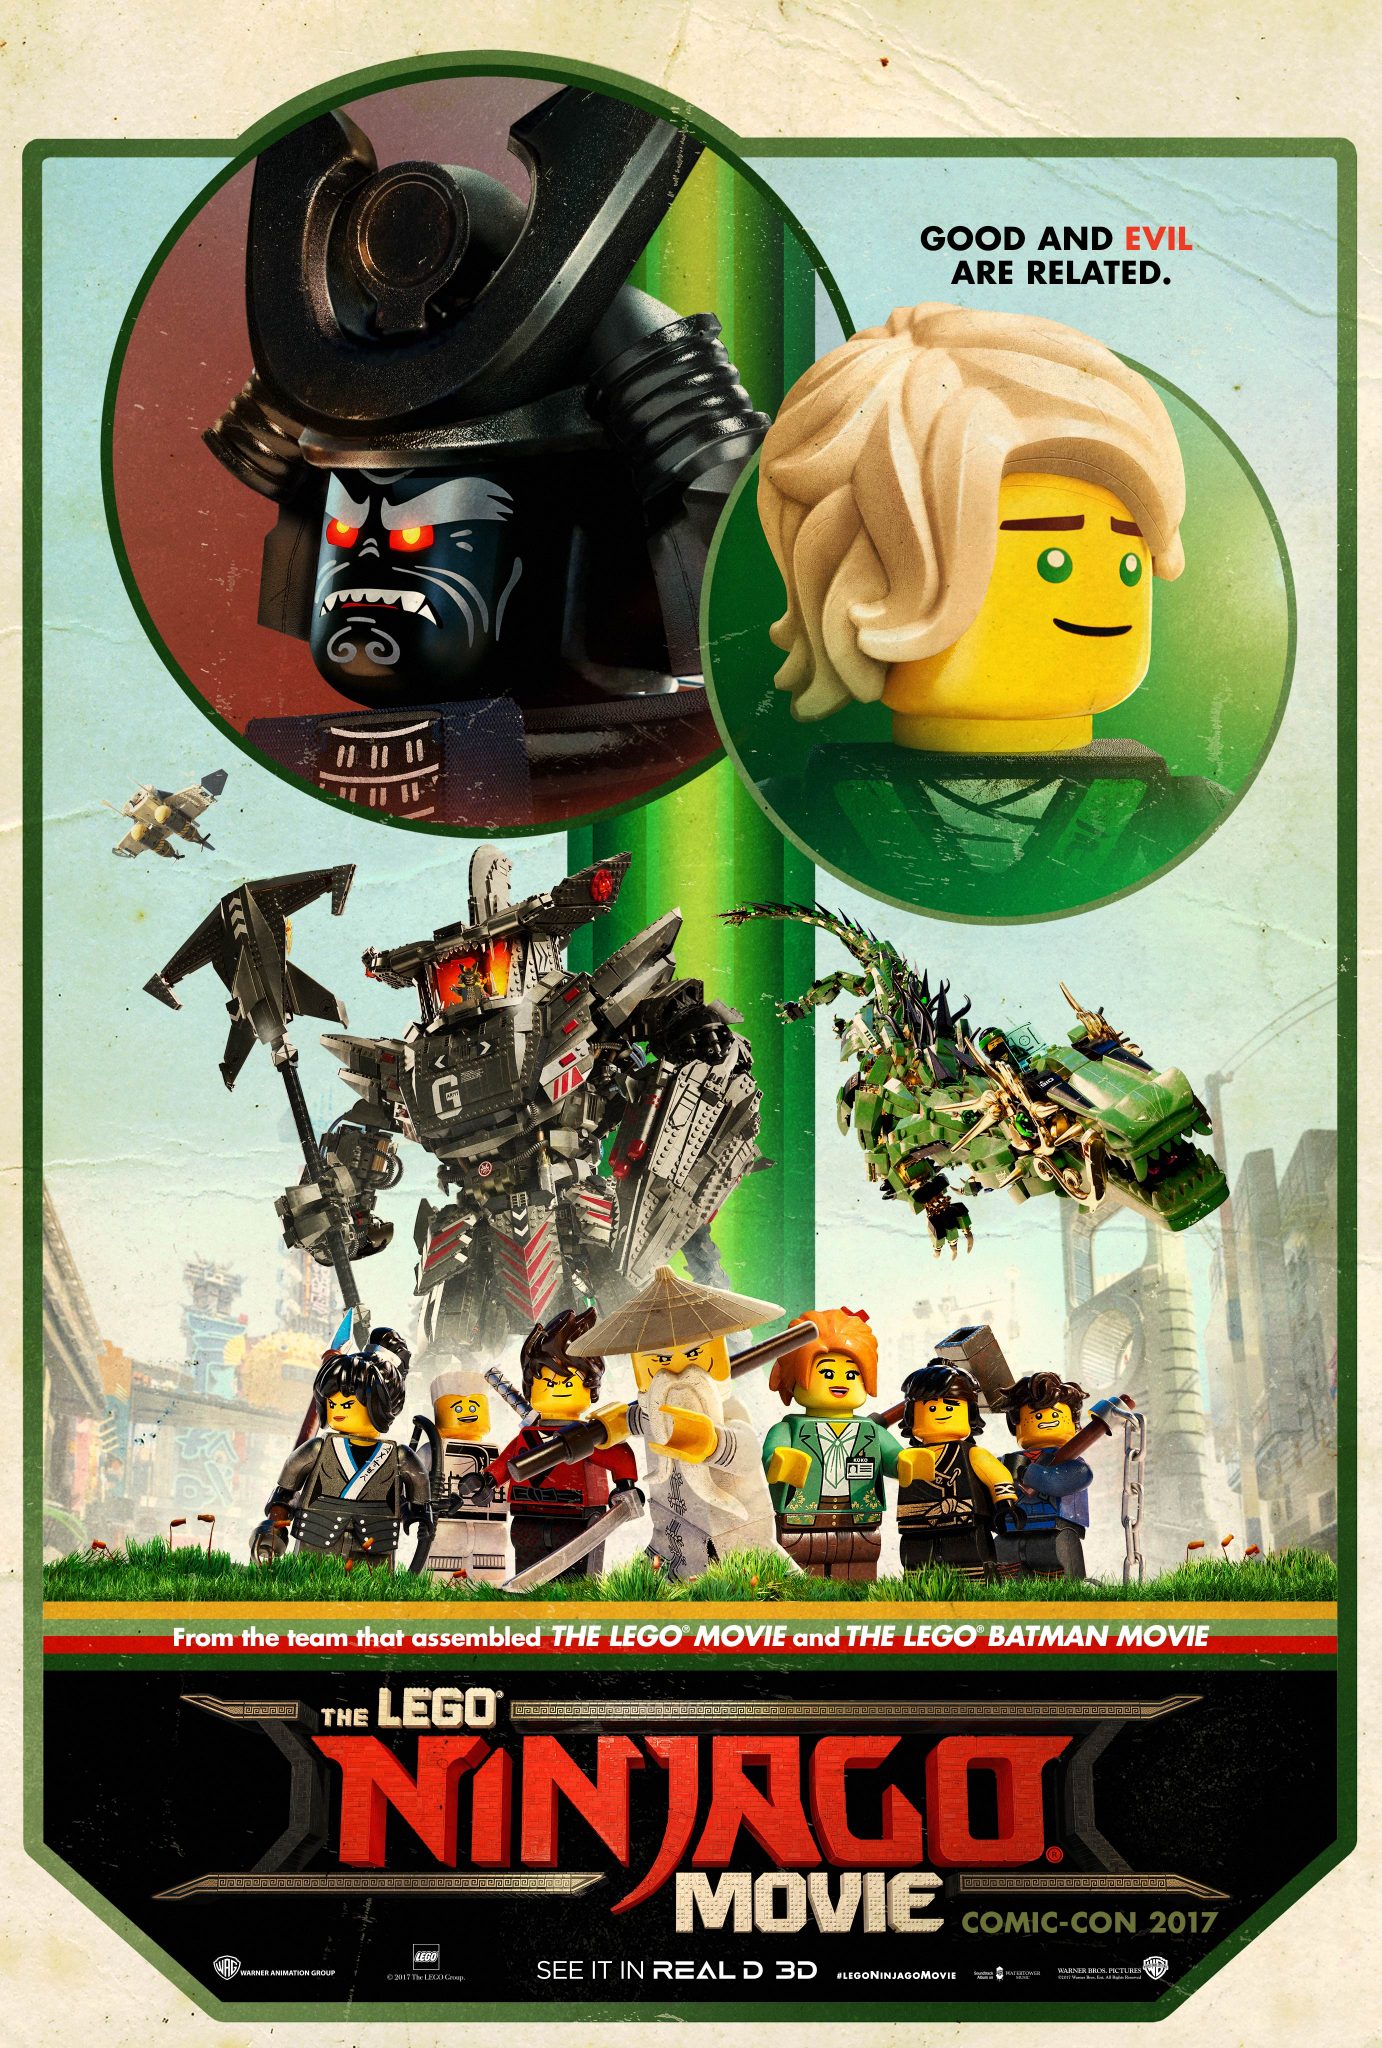 New Movie: The LEGO NINJAGO Movie